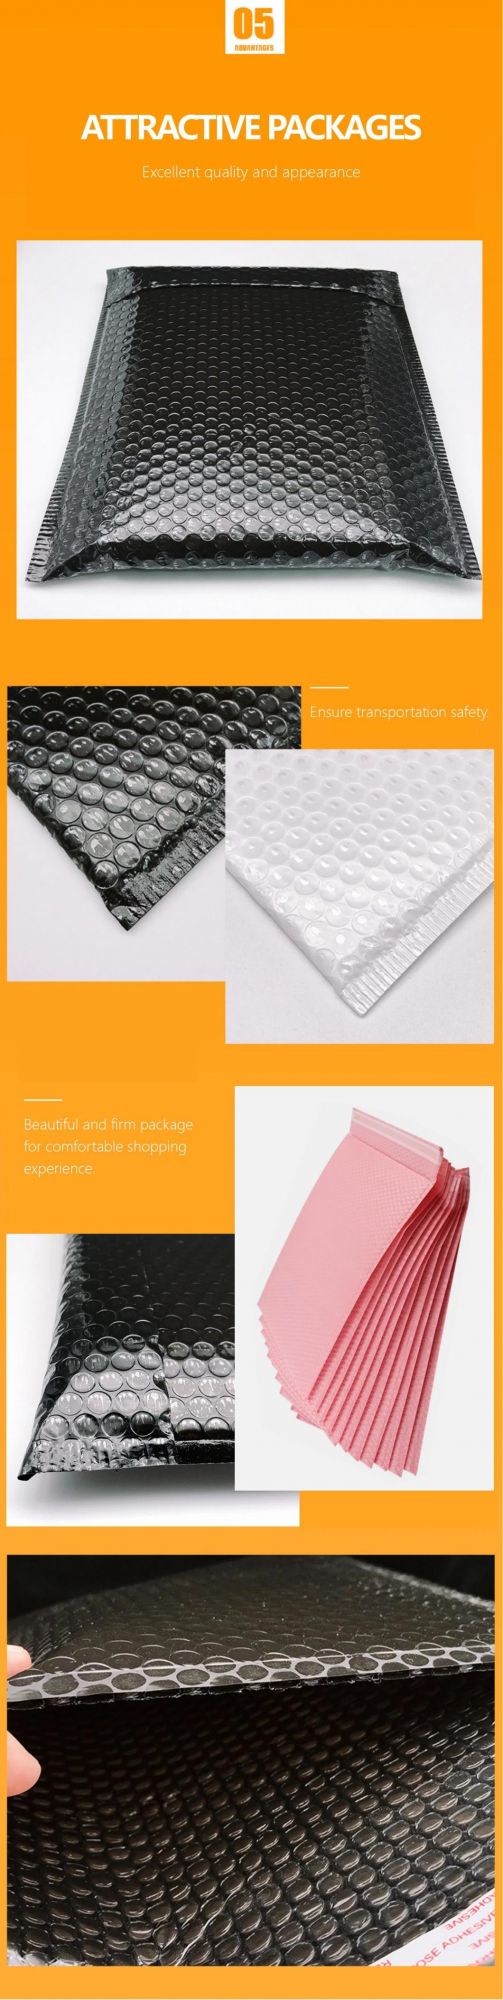 Padded Envelopes Biodegradable